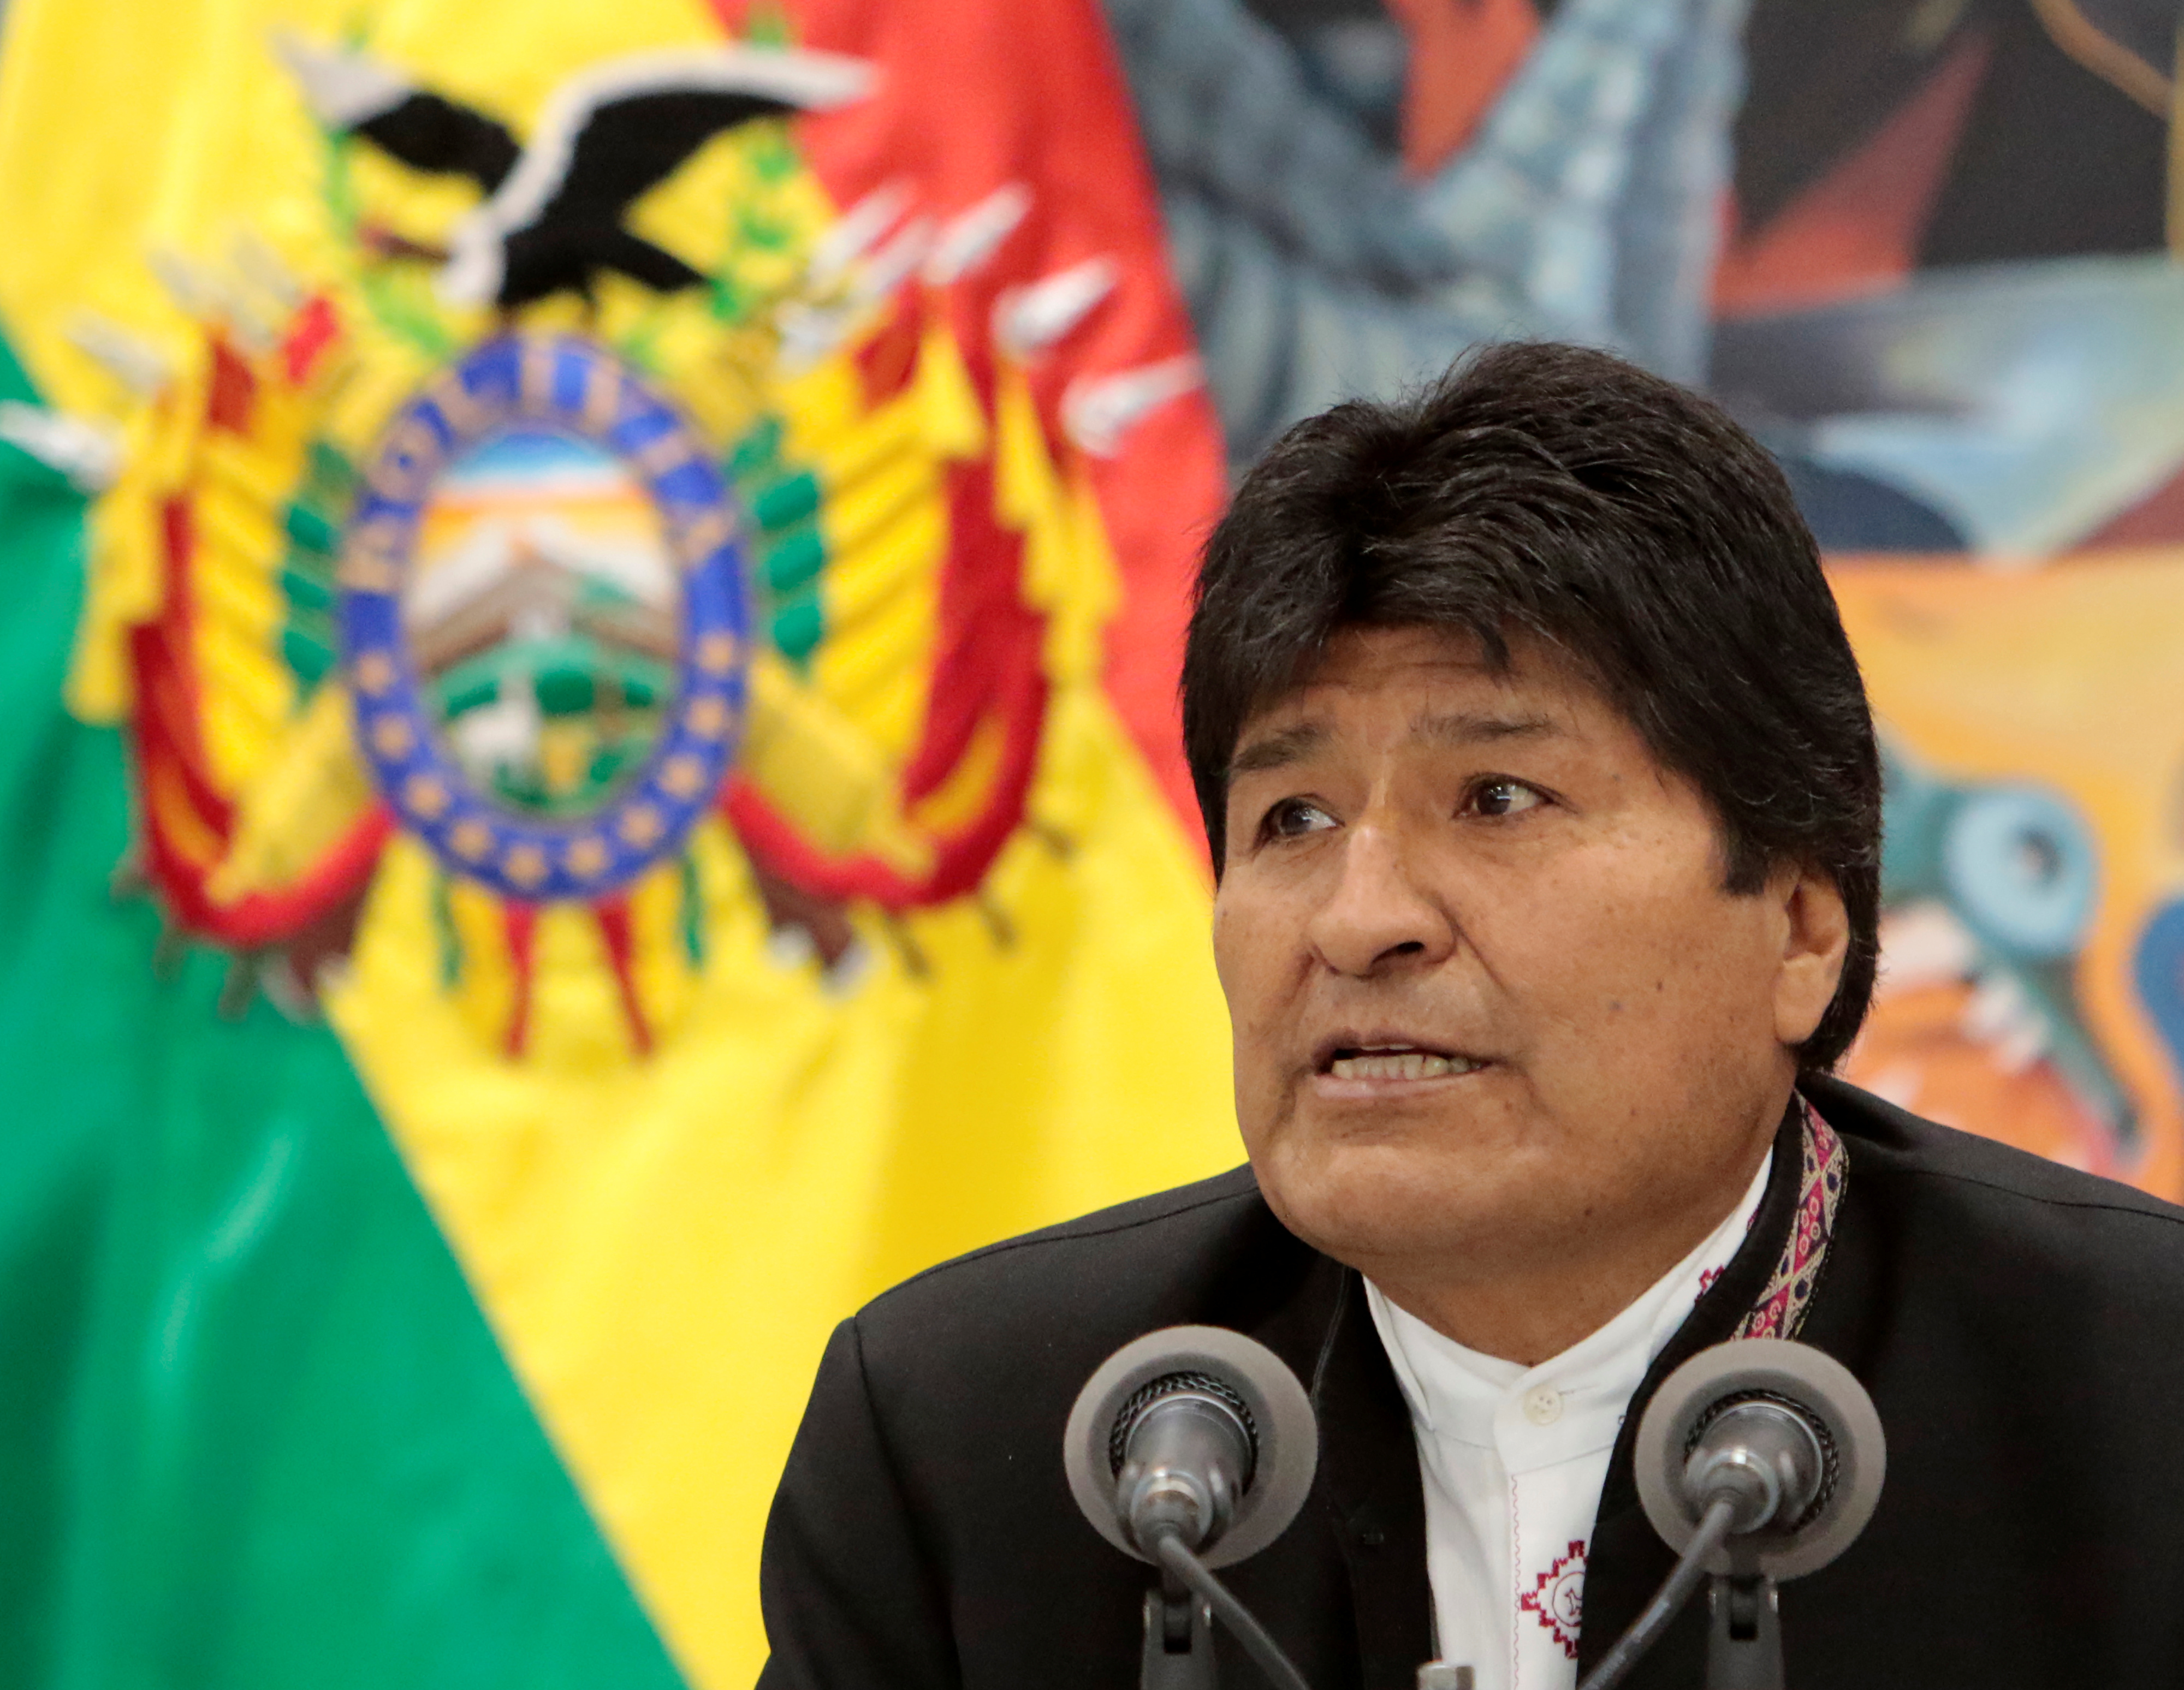 Evo Morales llama a la concertación y diálogo mientras se realiza auditoria a elecciones consideradas fraudulentas